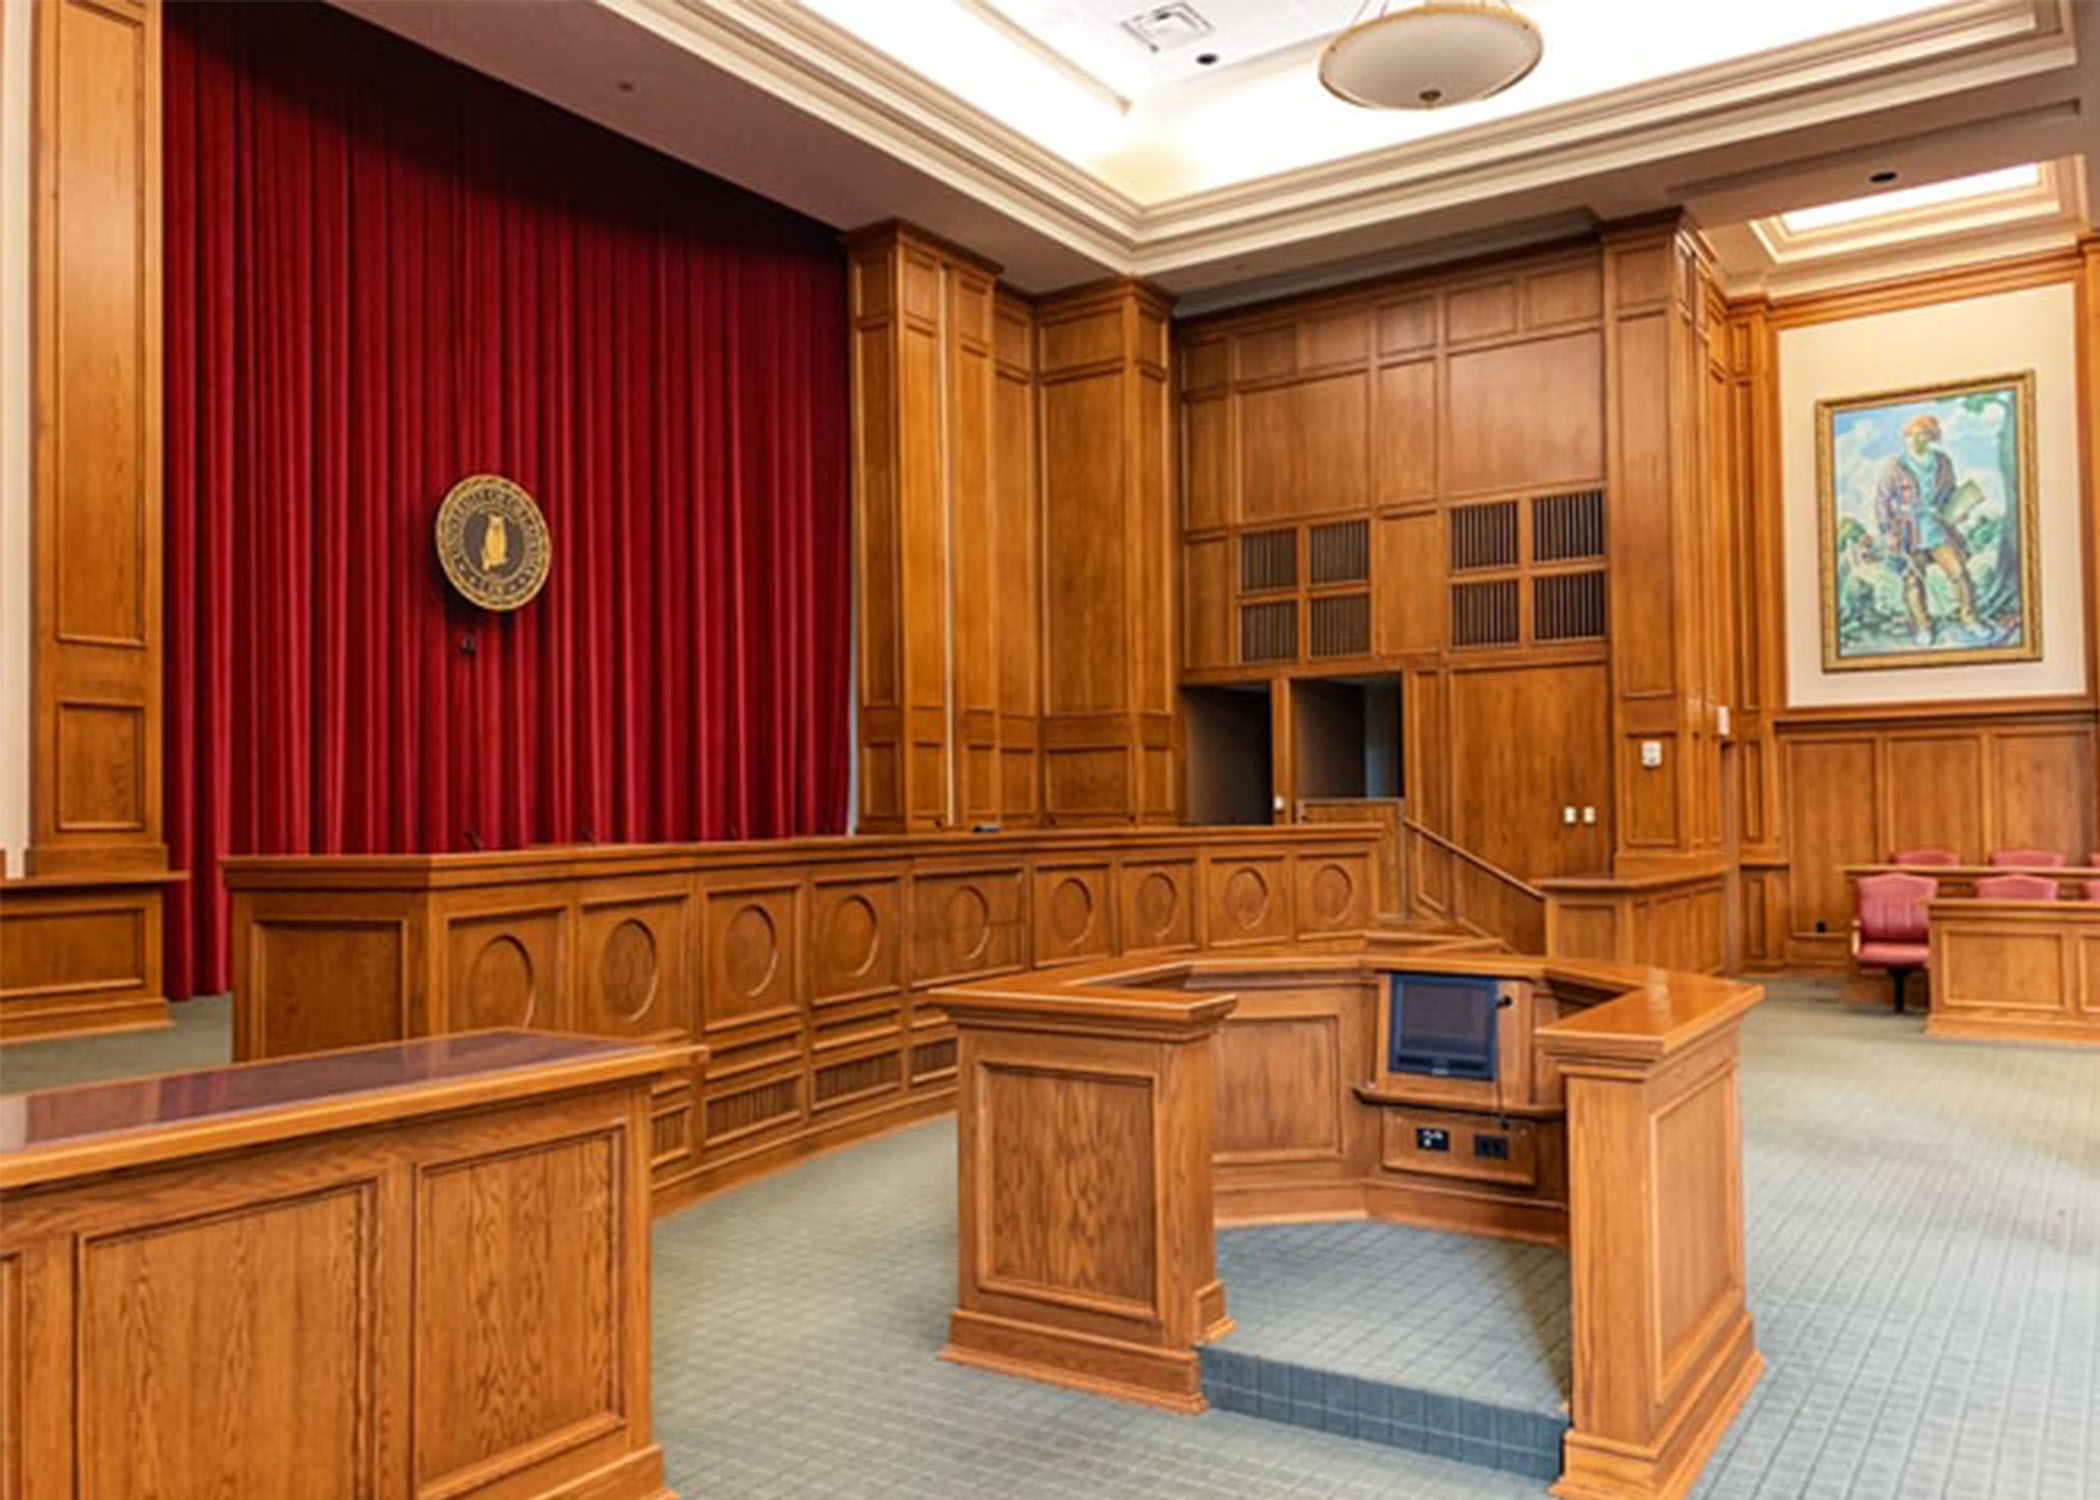 Courtroom interior, OCK law school.